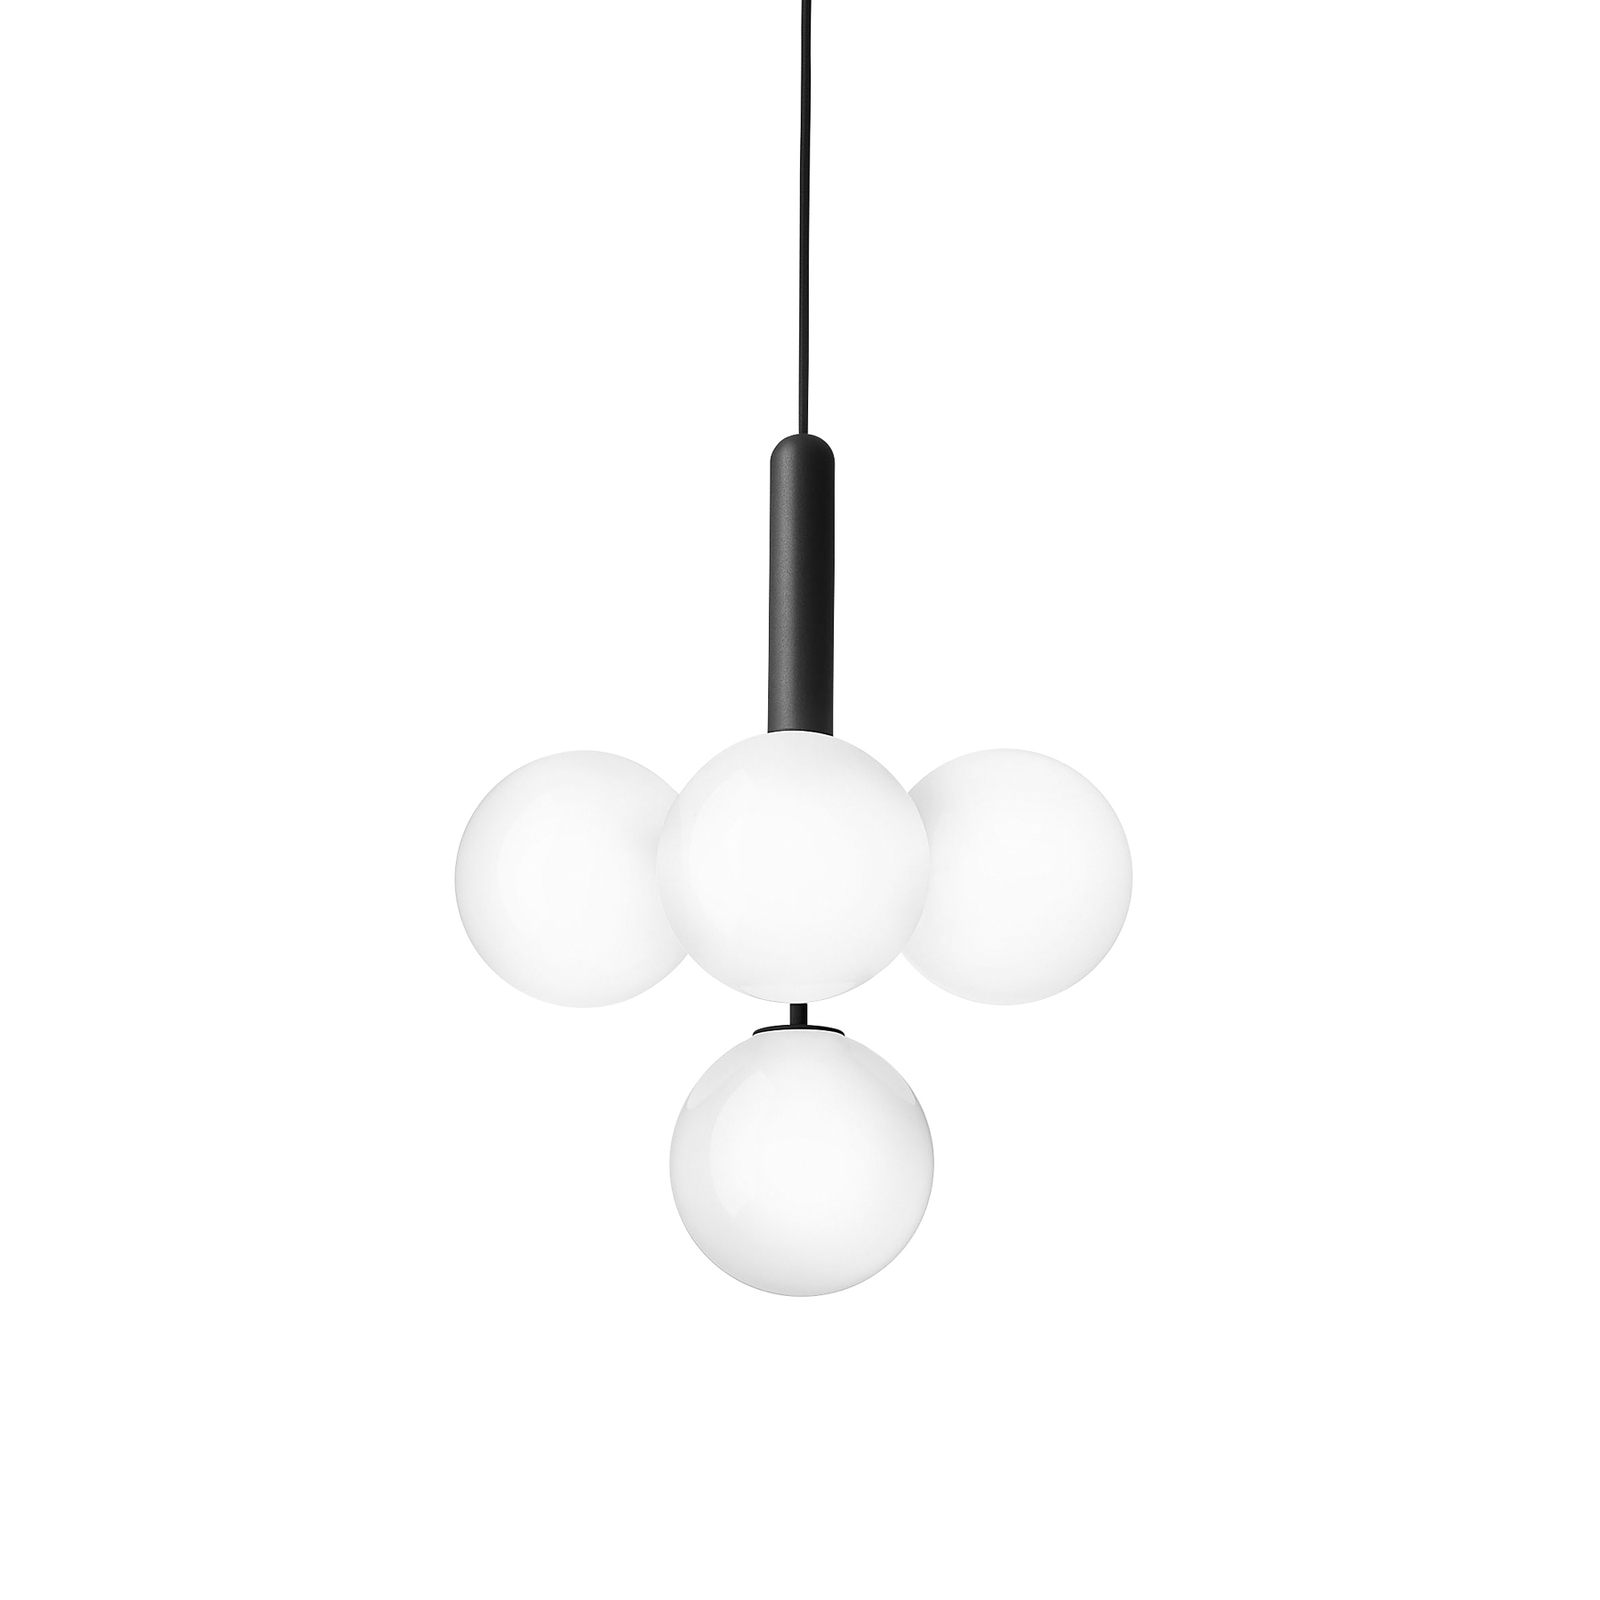 Nuura Miira 4 hanging light 4-bulb grey/opal